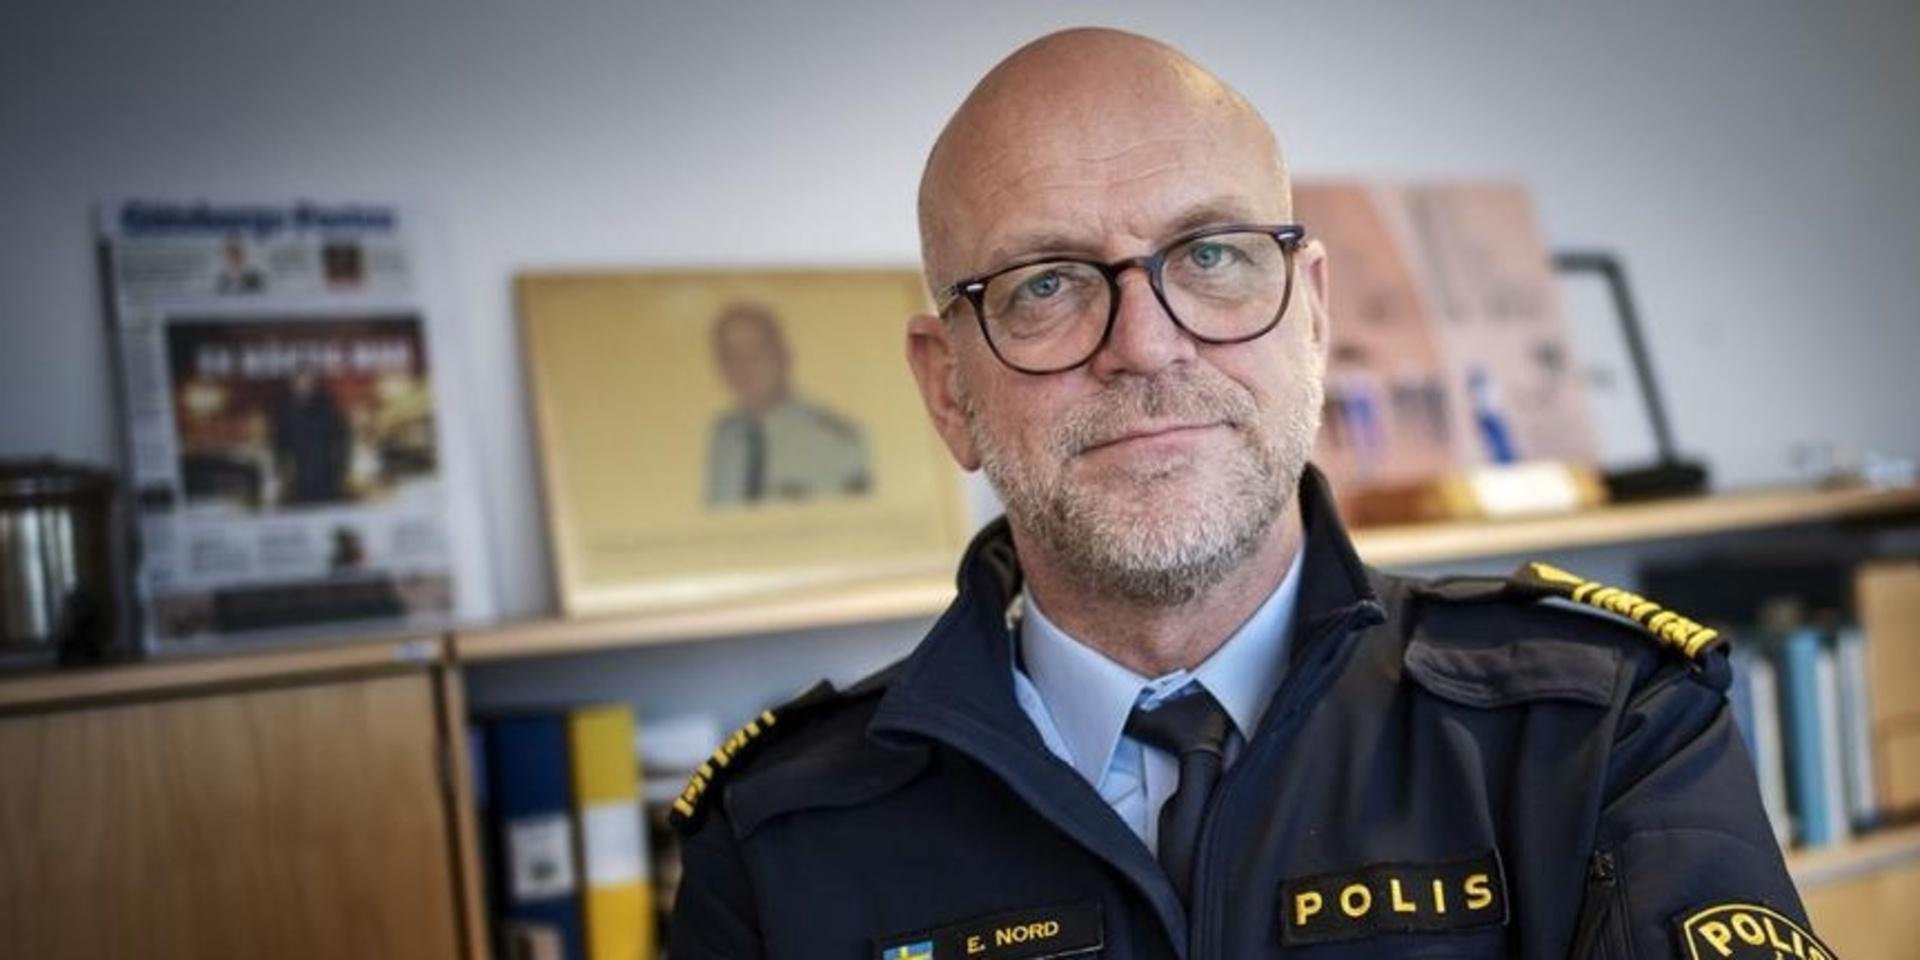 Erik Nord, polischef för Storgöteborg, vill undersöka nivåerna av narkotika i avloppsvattnet för att belysa omfattningen av användningen.